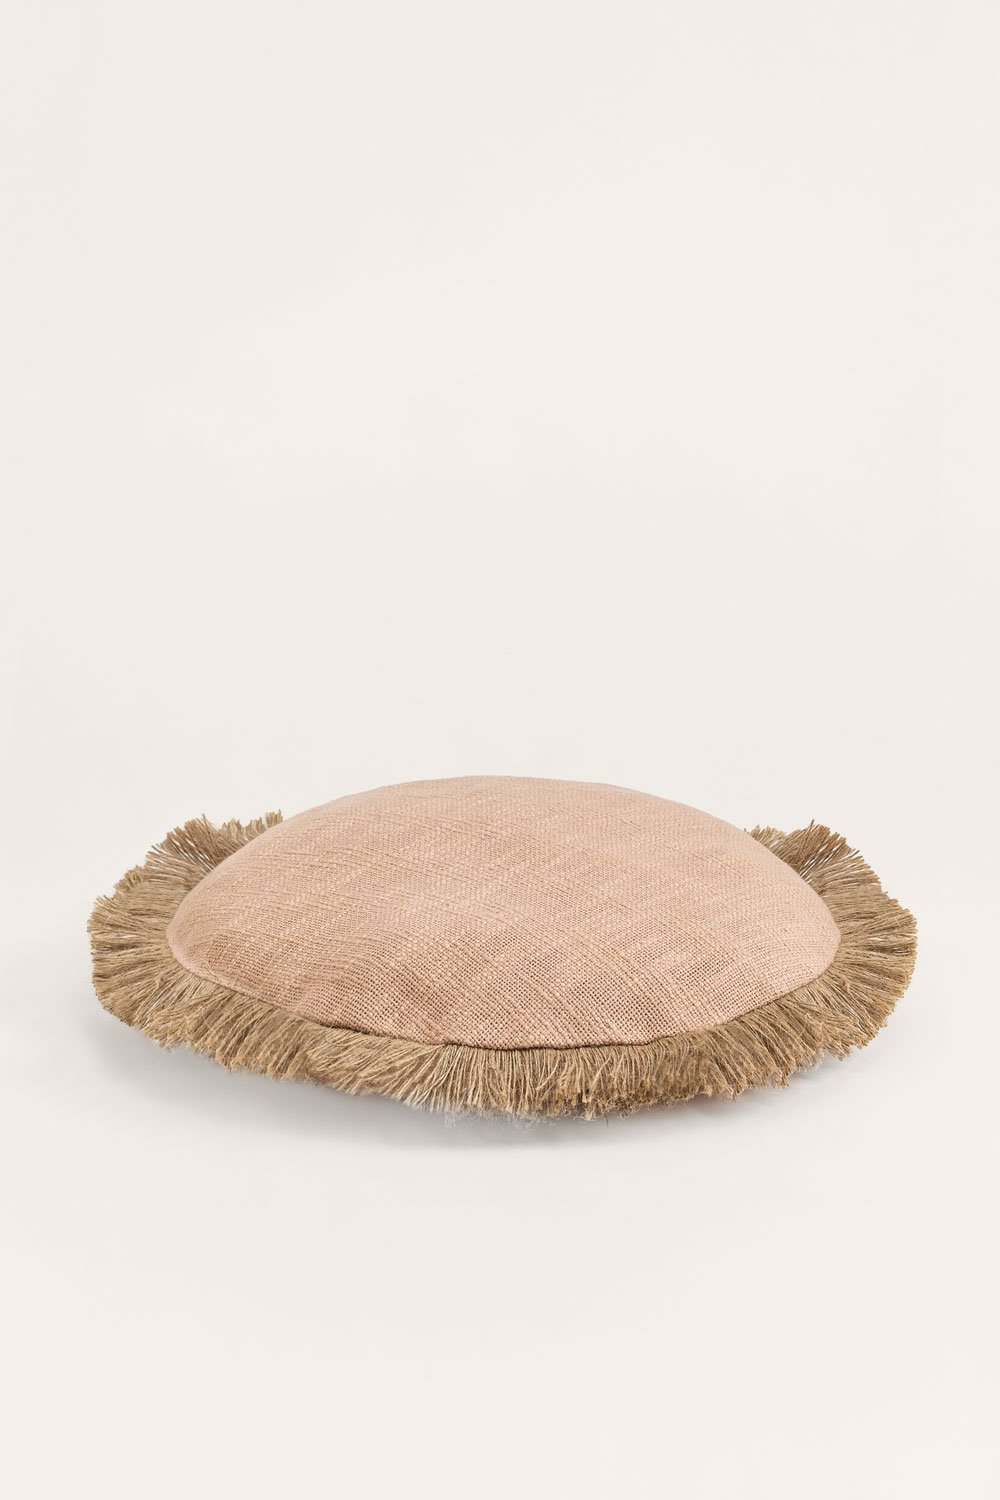 Cuscino rotondo in cotone (Ø40 cm) Paraiba, immagine della galleria 2